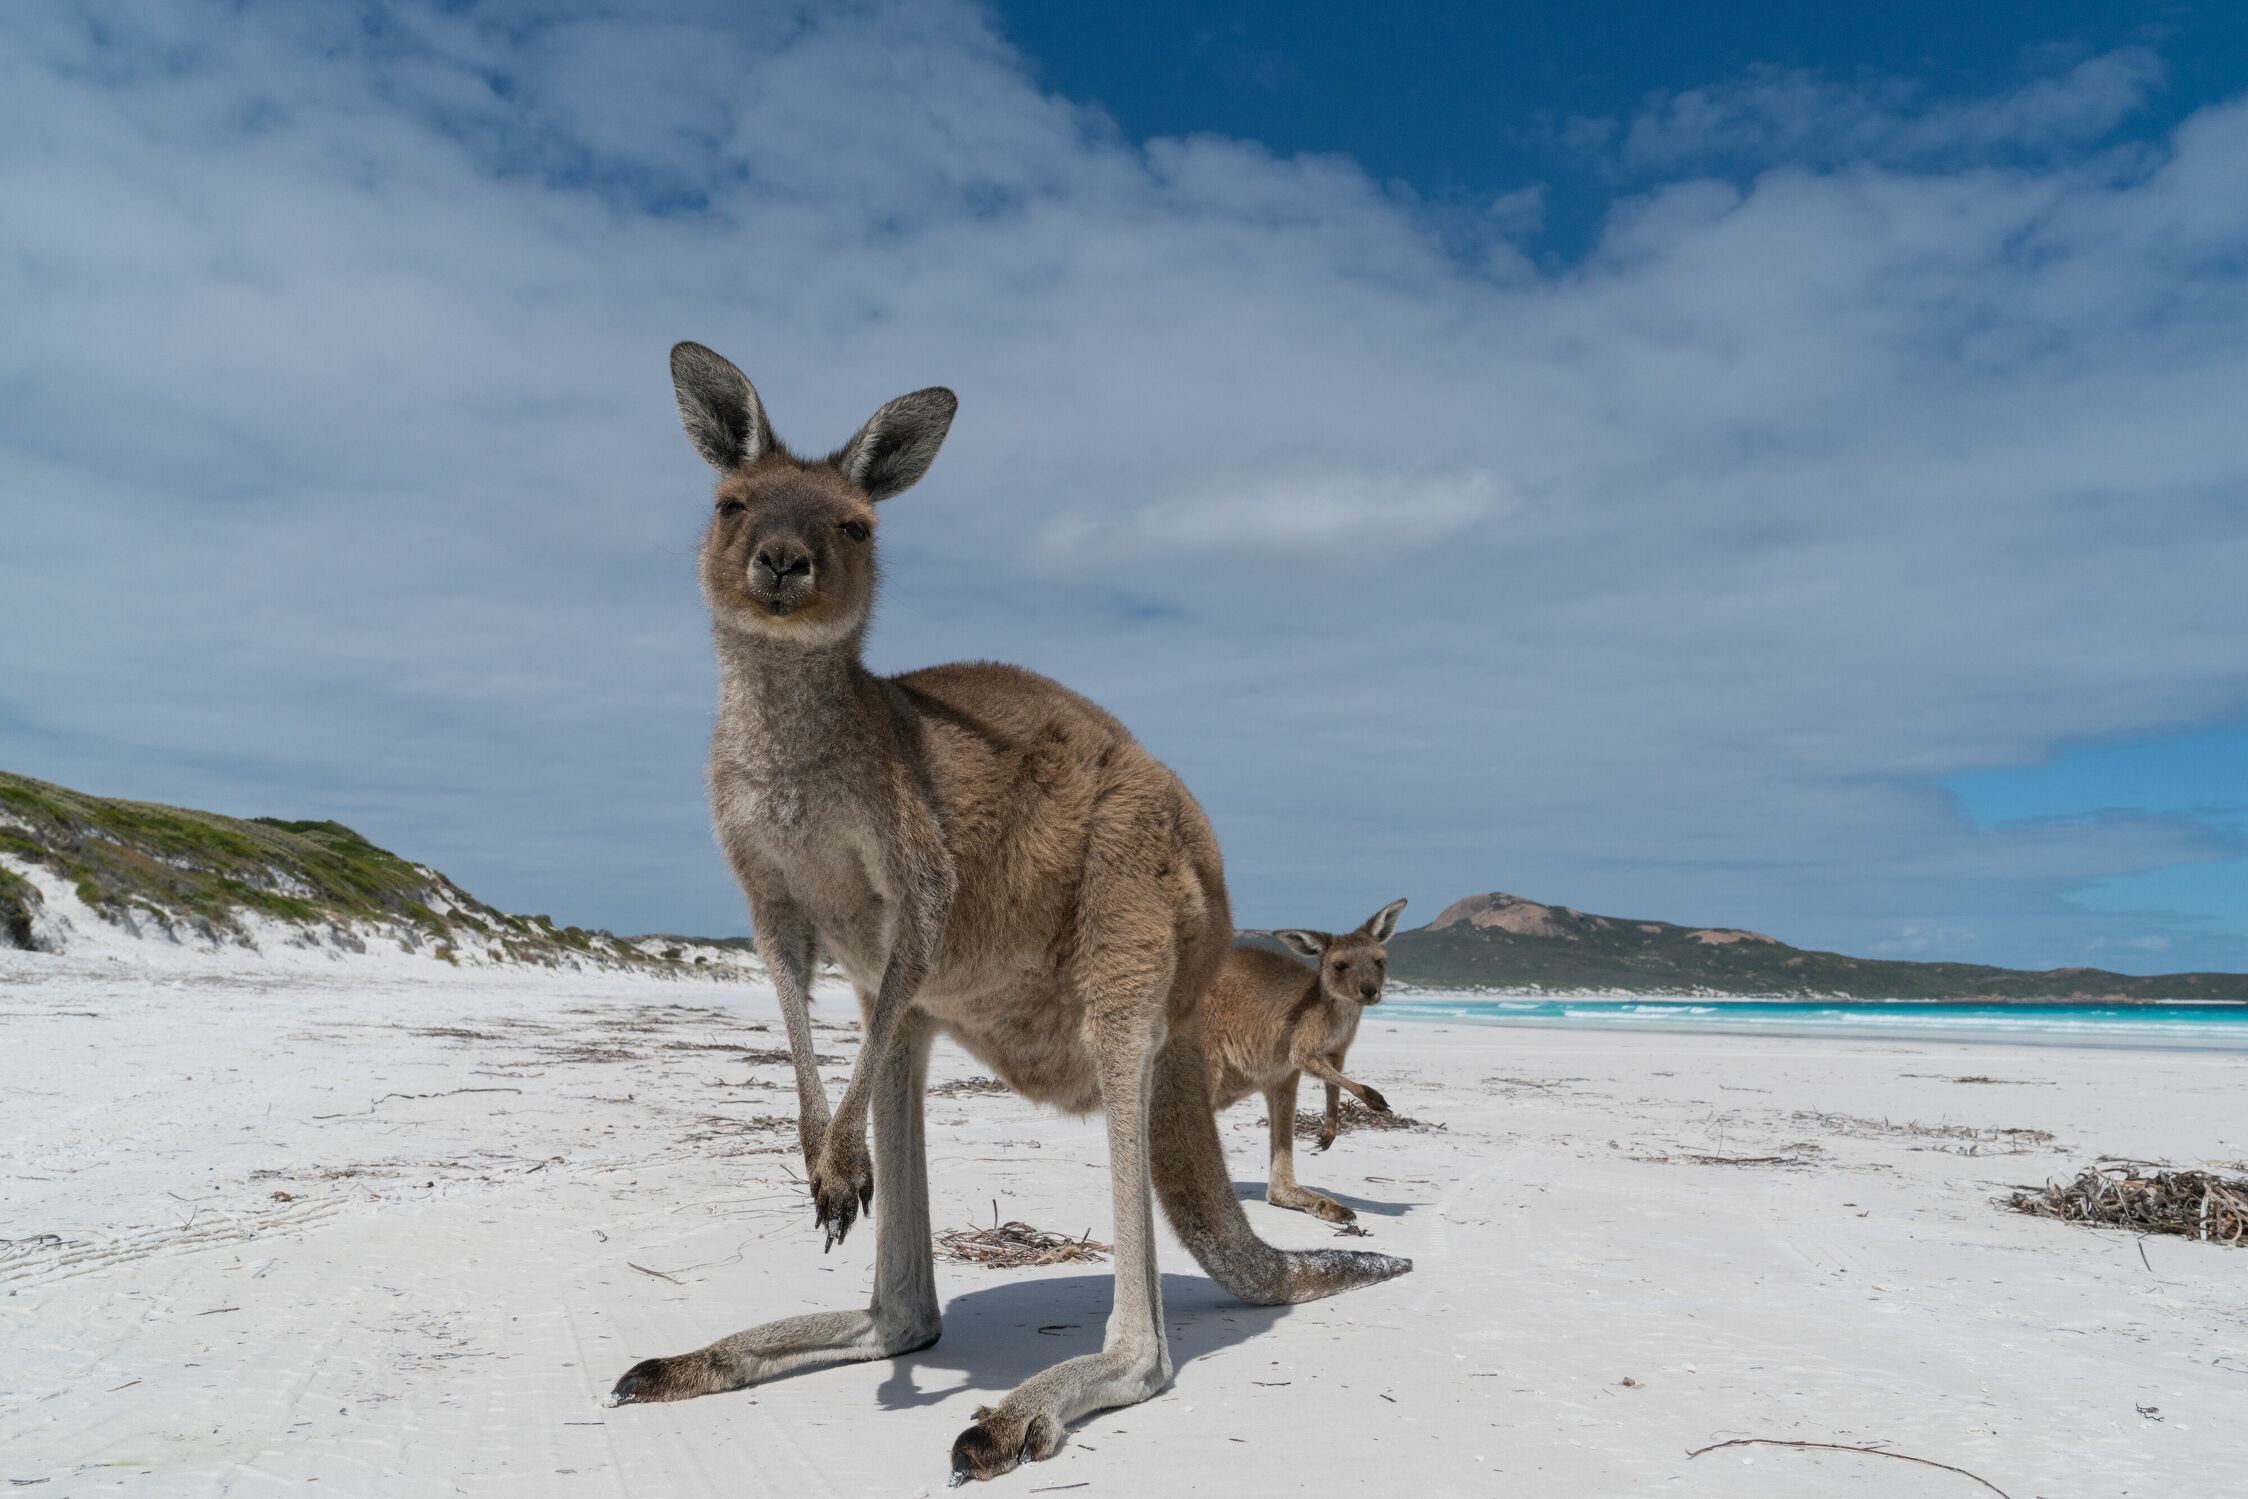 Bild mit Tiere, Säugetiere, Natur, Landschaften, Strände, Fauna, Reisen, Australien, Känguru, Western Australia